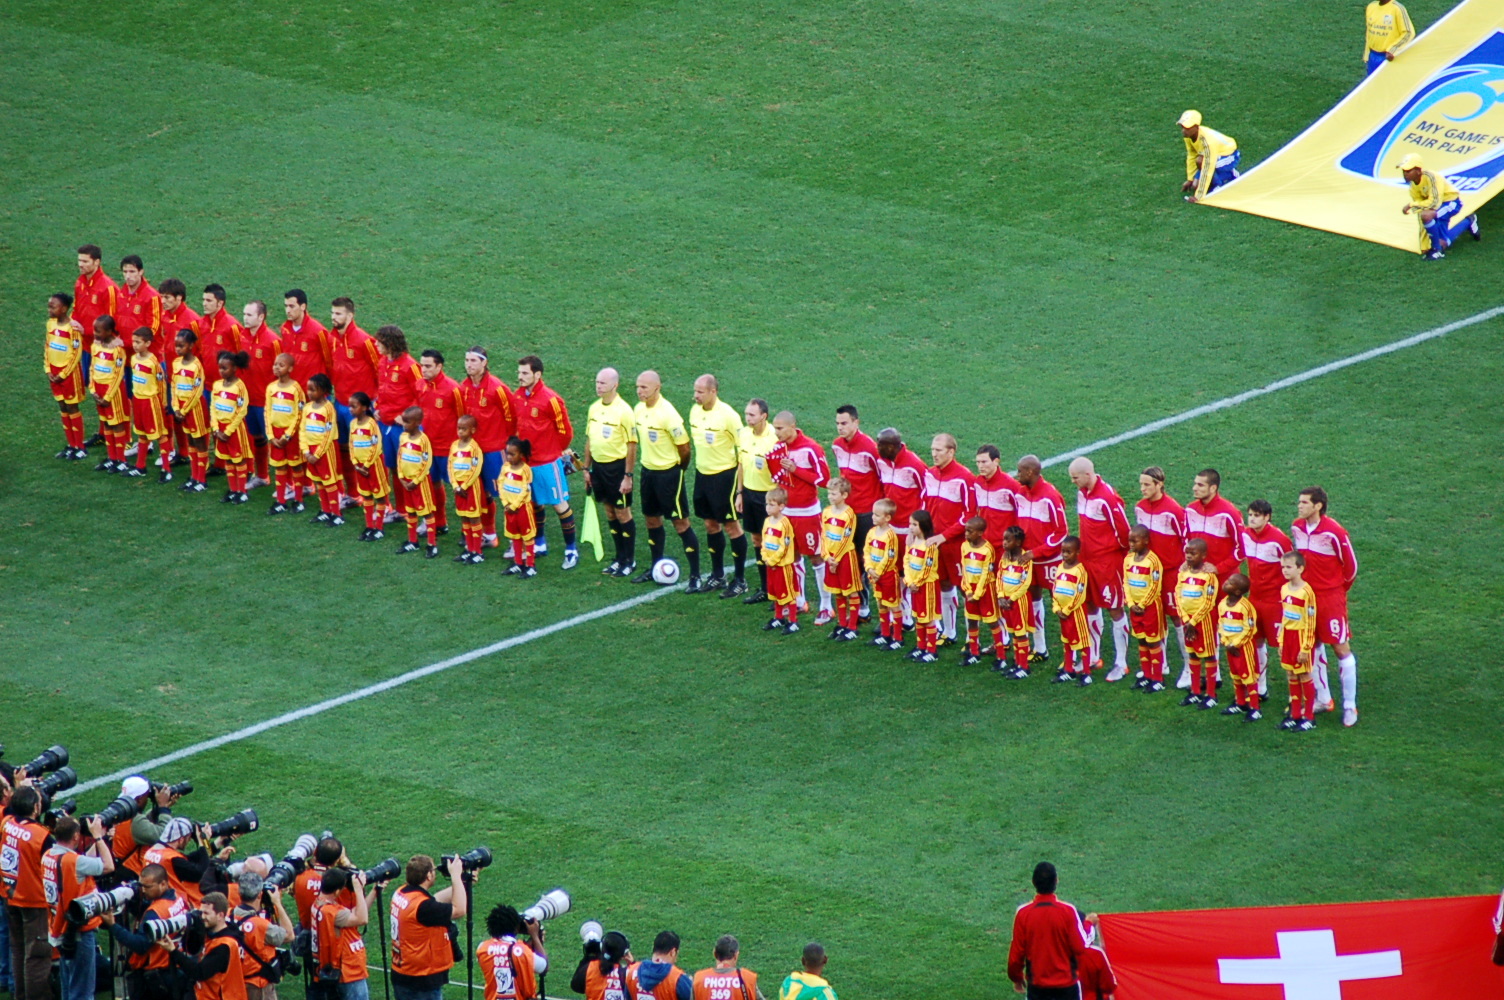 Selección de España, antes del encuentro contra Suiza correspondiente a la Copa Mundial de la FIFA de 2010. Foto: jit bag.